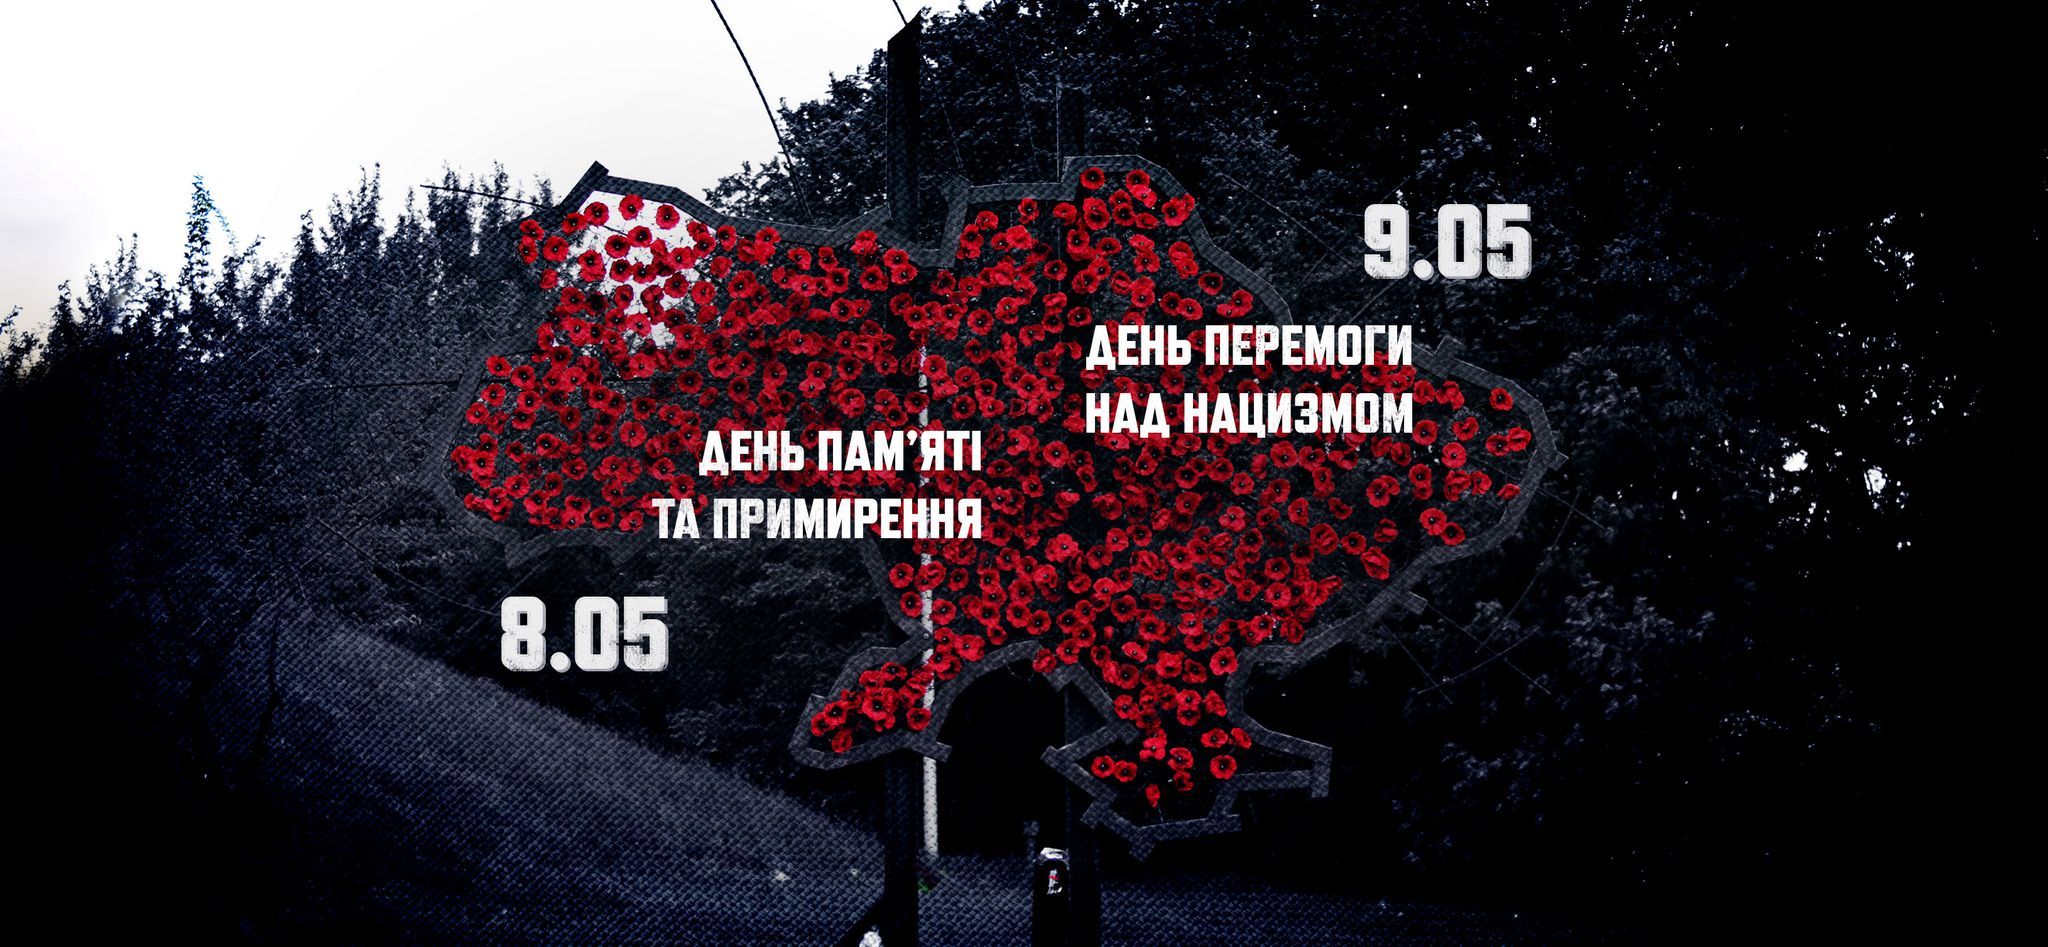 День пам’яті та примирення відзначають в Україні і світі